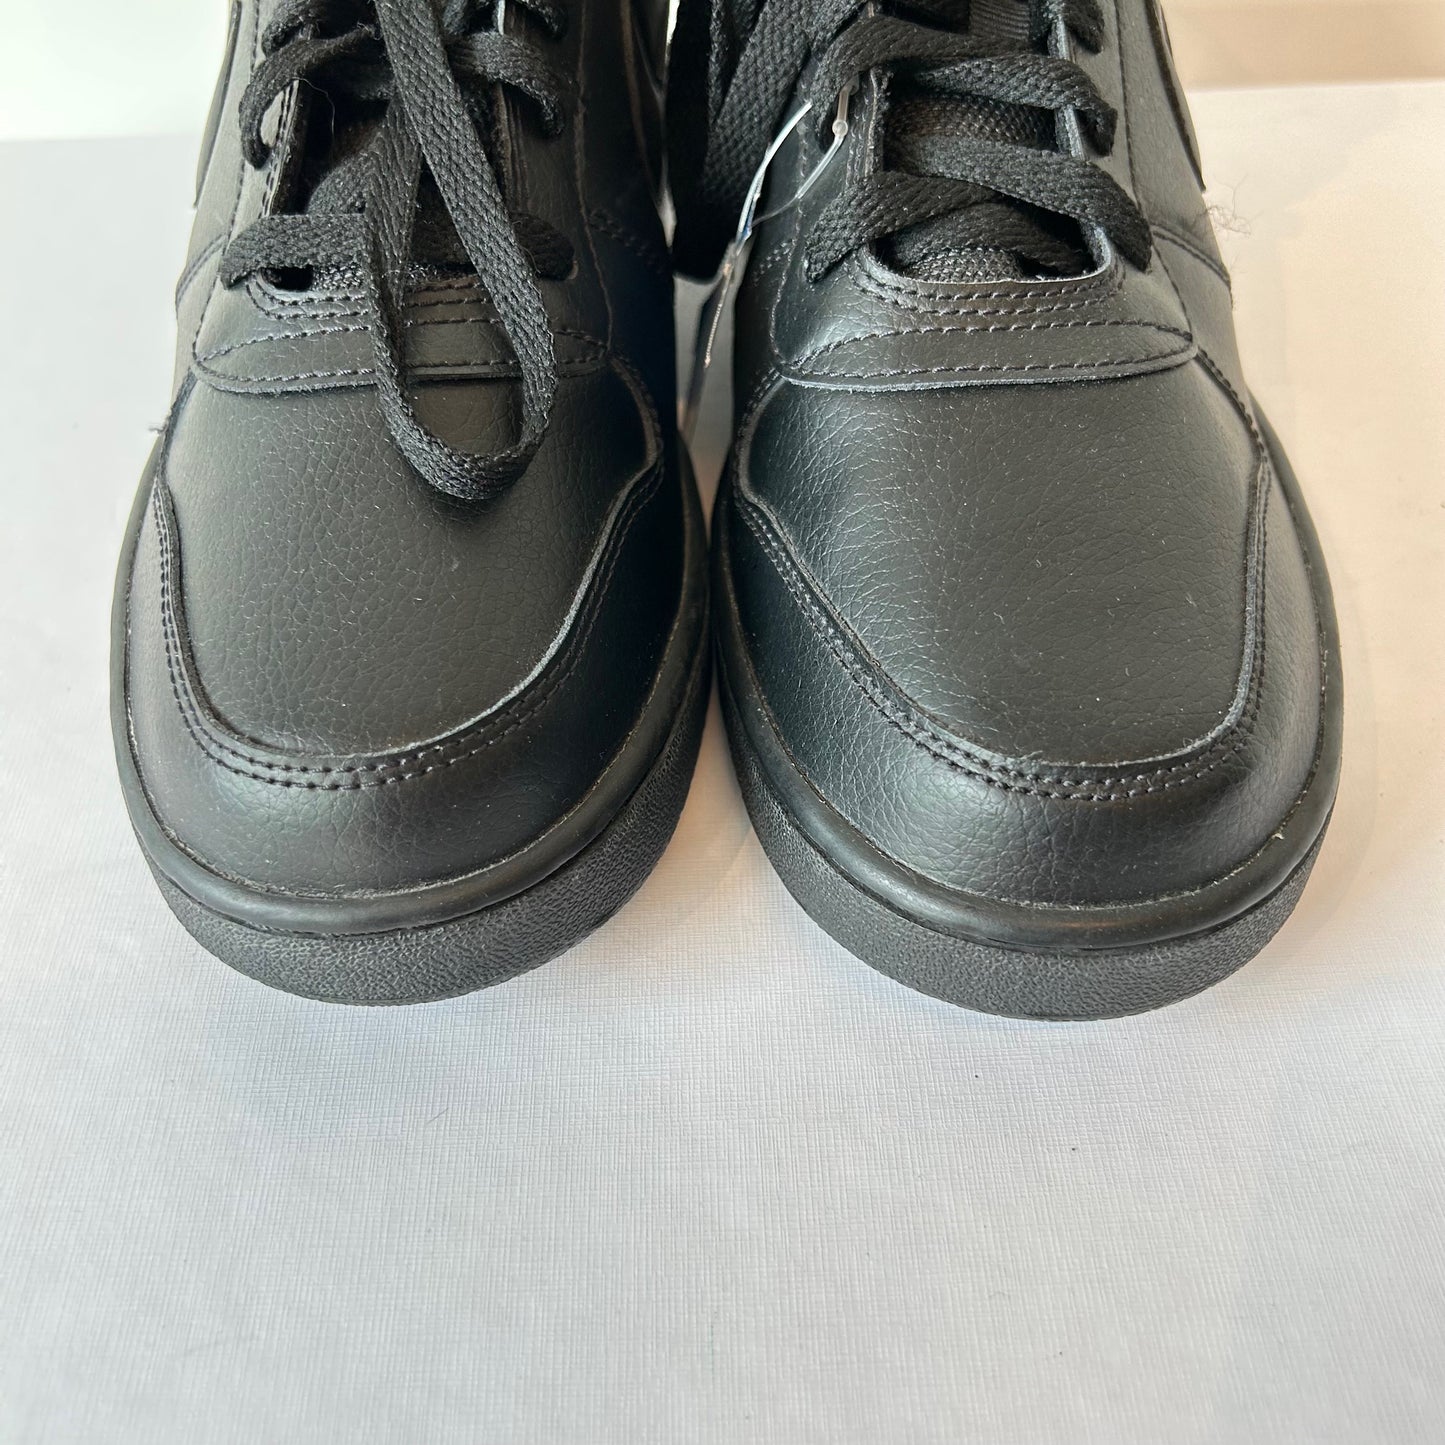 8 Nike Men's Black '07 Mid Shoes